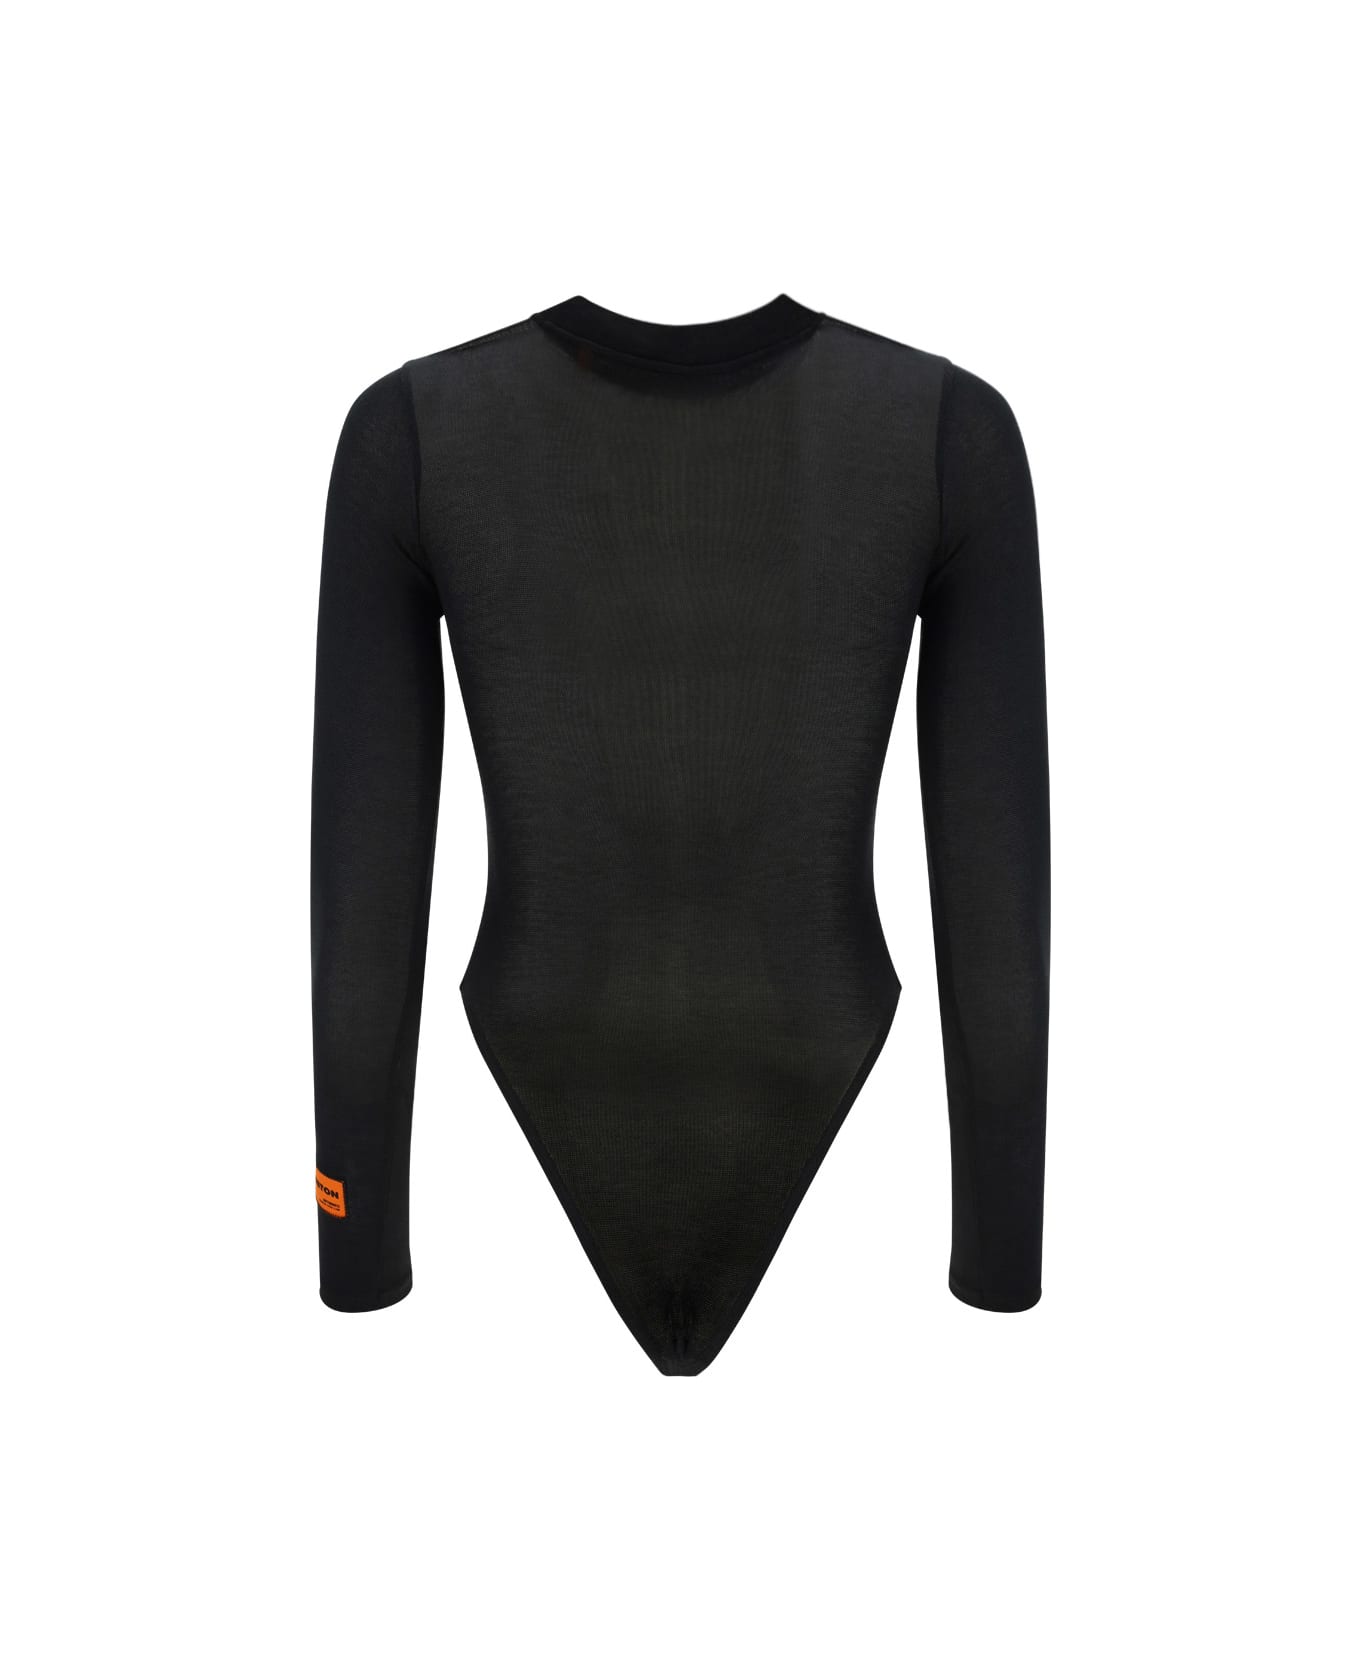 HERON PRESTON Bodysuit - Black/white